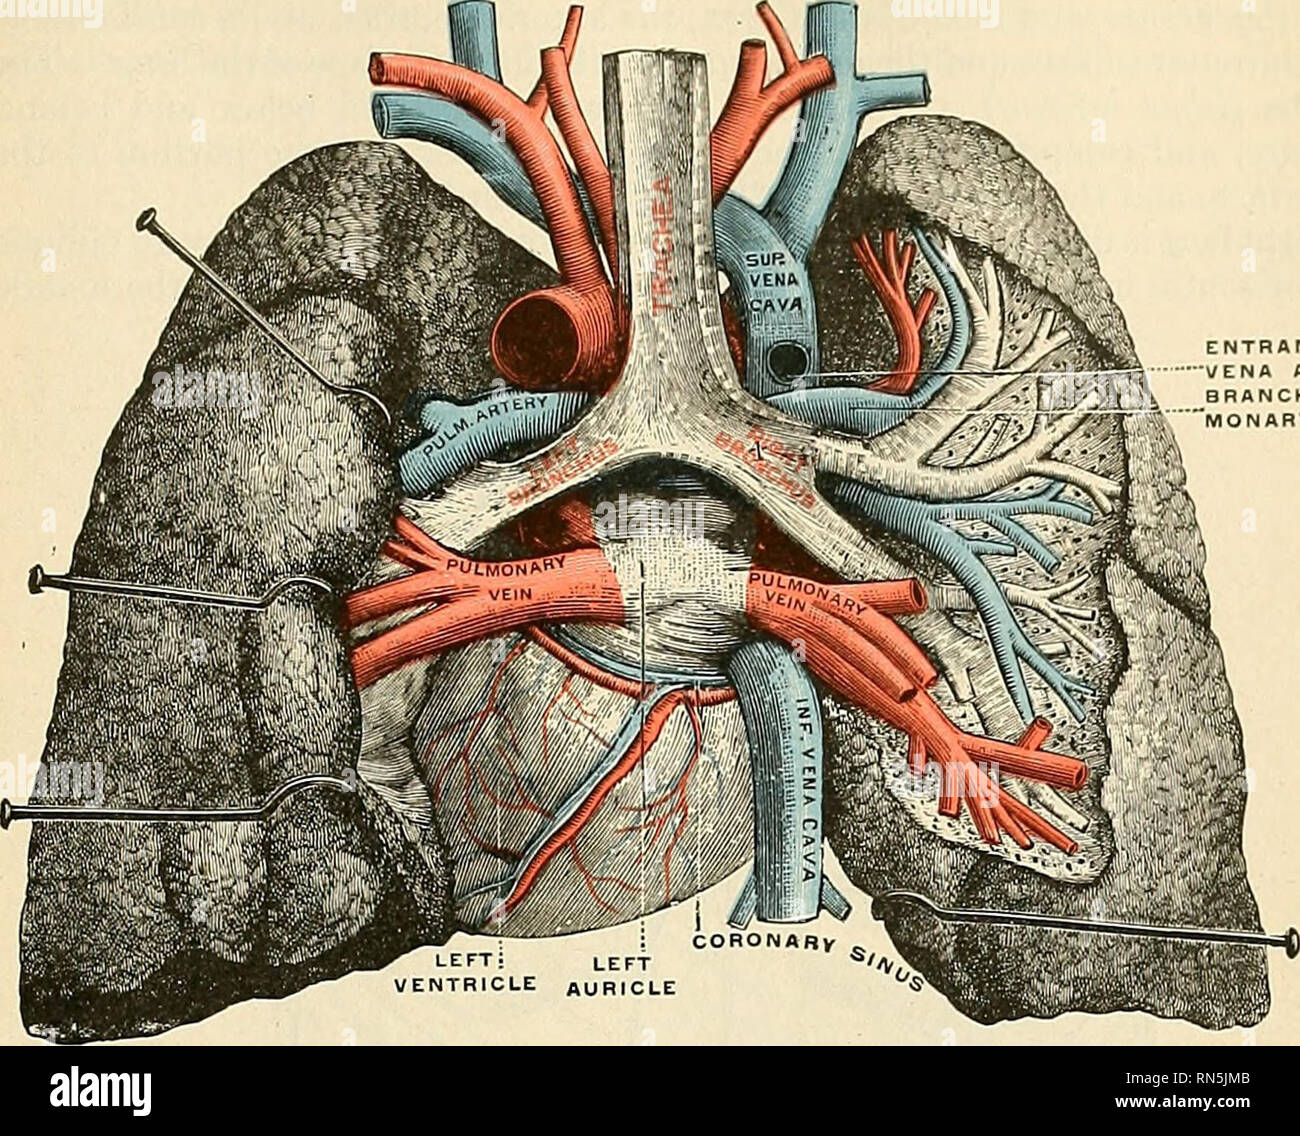 . Anatomia, descrittivo e applicata. Anatomia. I POLMONI 1191 Come visibile sulla superficie, questa fessura inizia l'aspetto interno del hnig presso la parte superiore e la parte posteriore del hihim, e corre indietro e verso l'alto. L'ANCE DI AZYGOS CH DI PUL- RY arteria Fig. 916.-vene polmonari, come si vede in una vista dorsale del cuore e il lun^. I polmoni sono stati tirati fuori dalla linea mediana, ed una parte del polmone destro è stata tagliata per visualizzare i condotti di aria e bloodvessels. (Testut.). Si prega di notare che queste immagini vengono estratte dalla pagina sottoposta a scansione di immagini che possono essere state migliorate digitalmente per migliorare la leggibilità Foto Stock